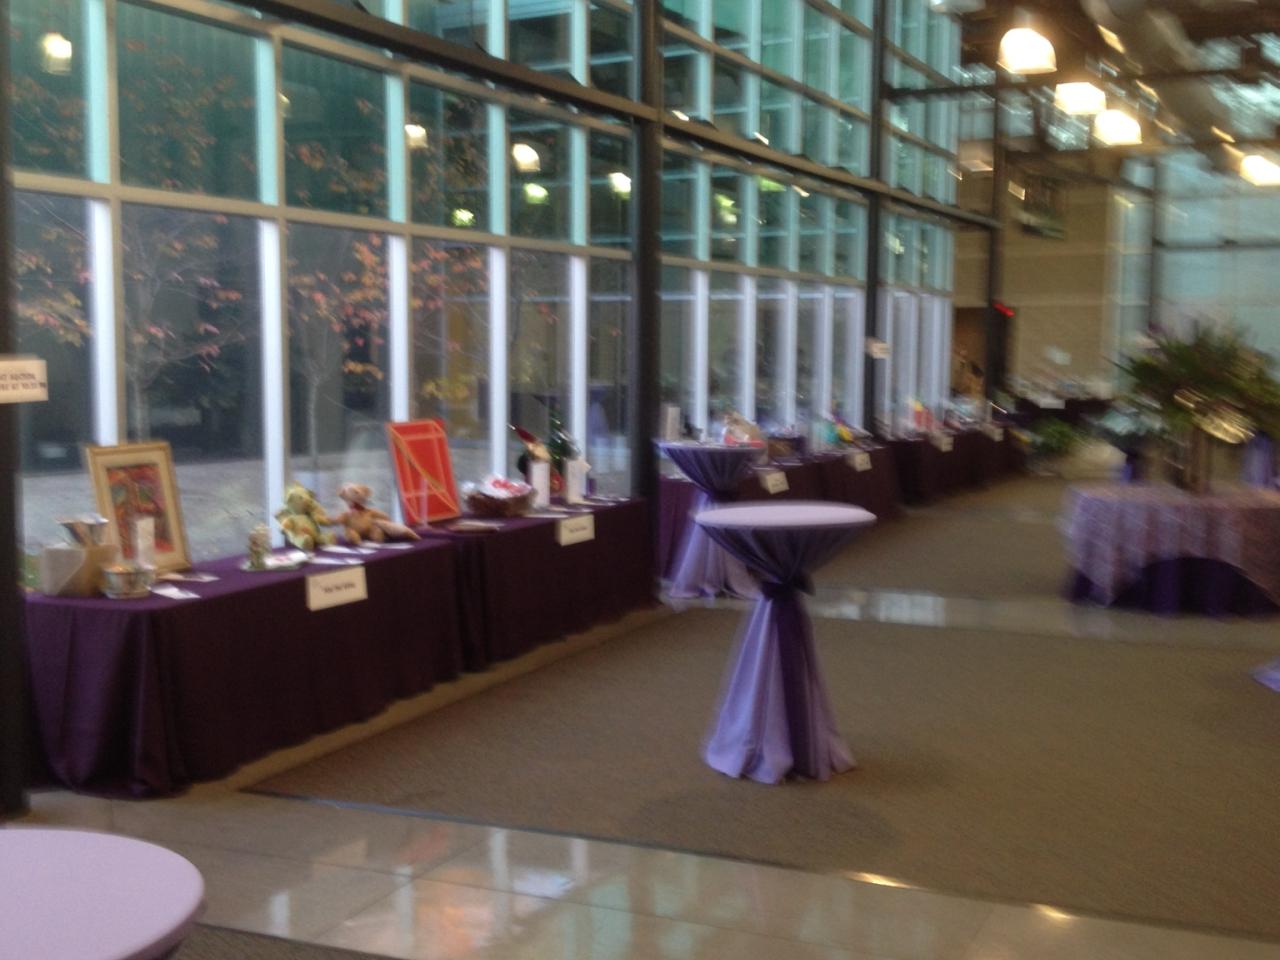 Alzheimer's awareness event at the 4-H center